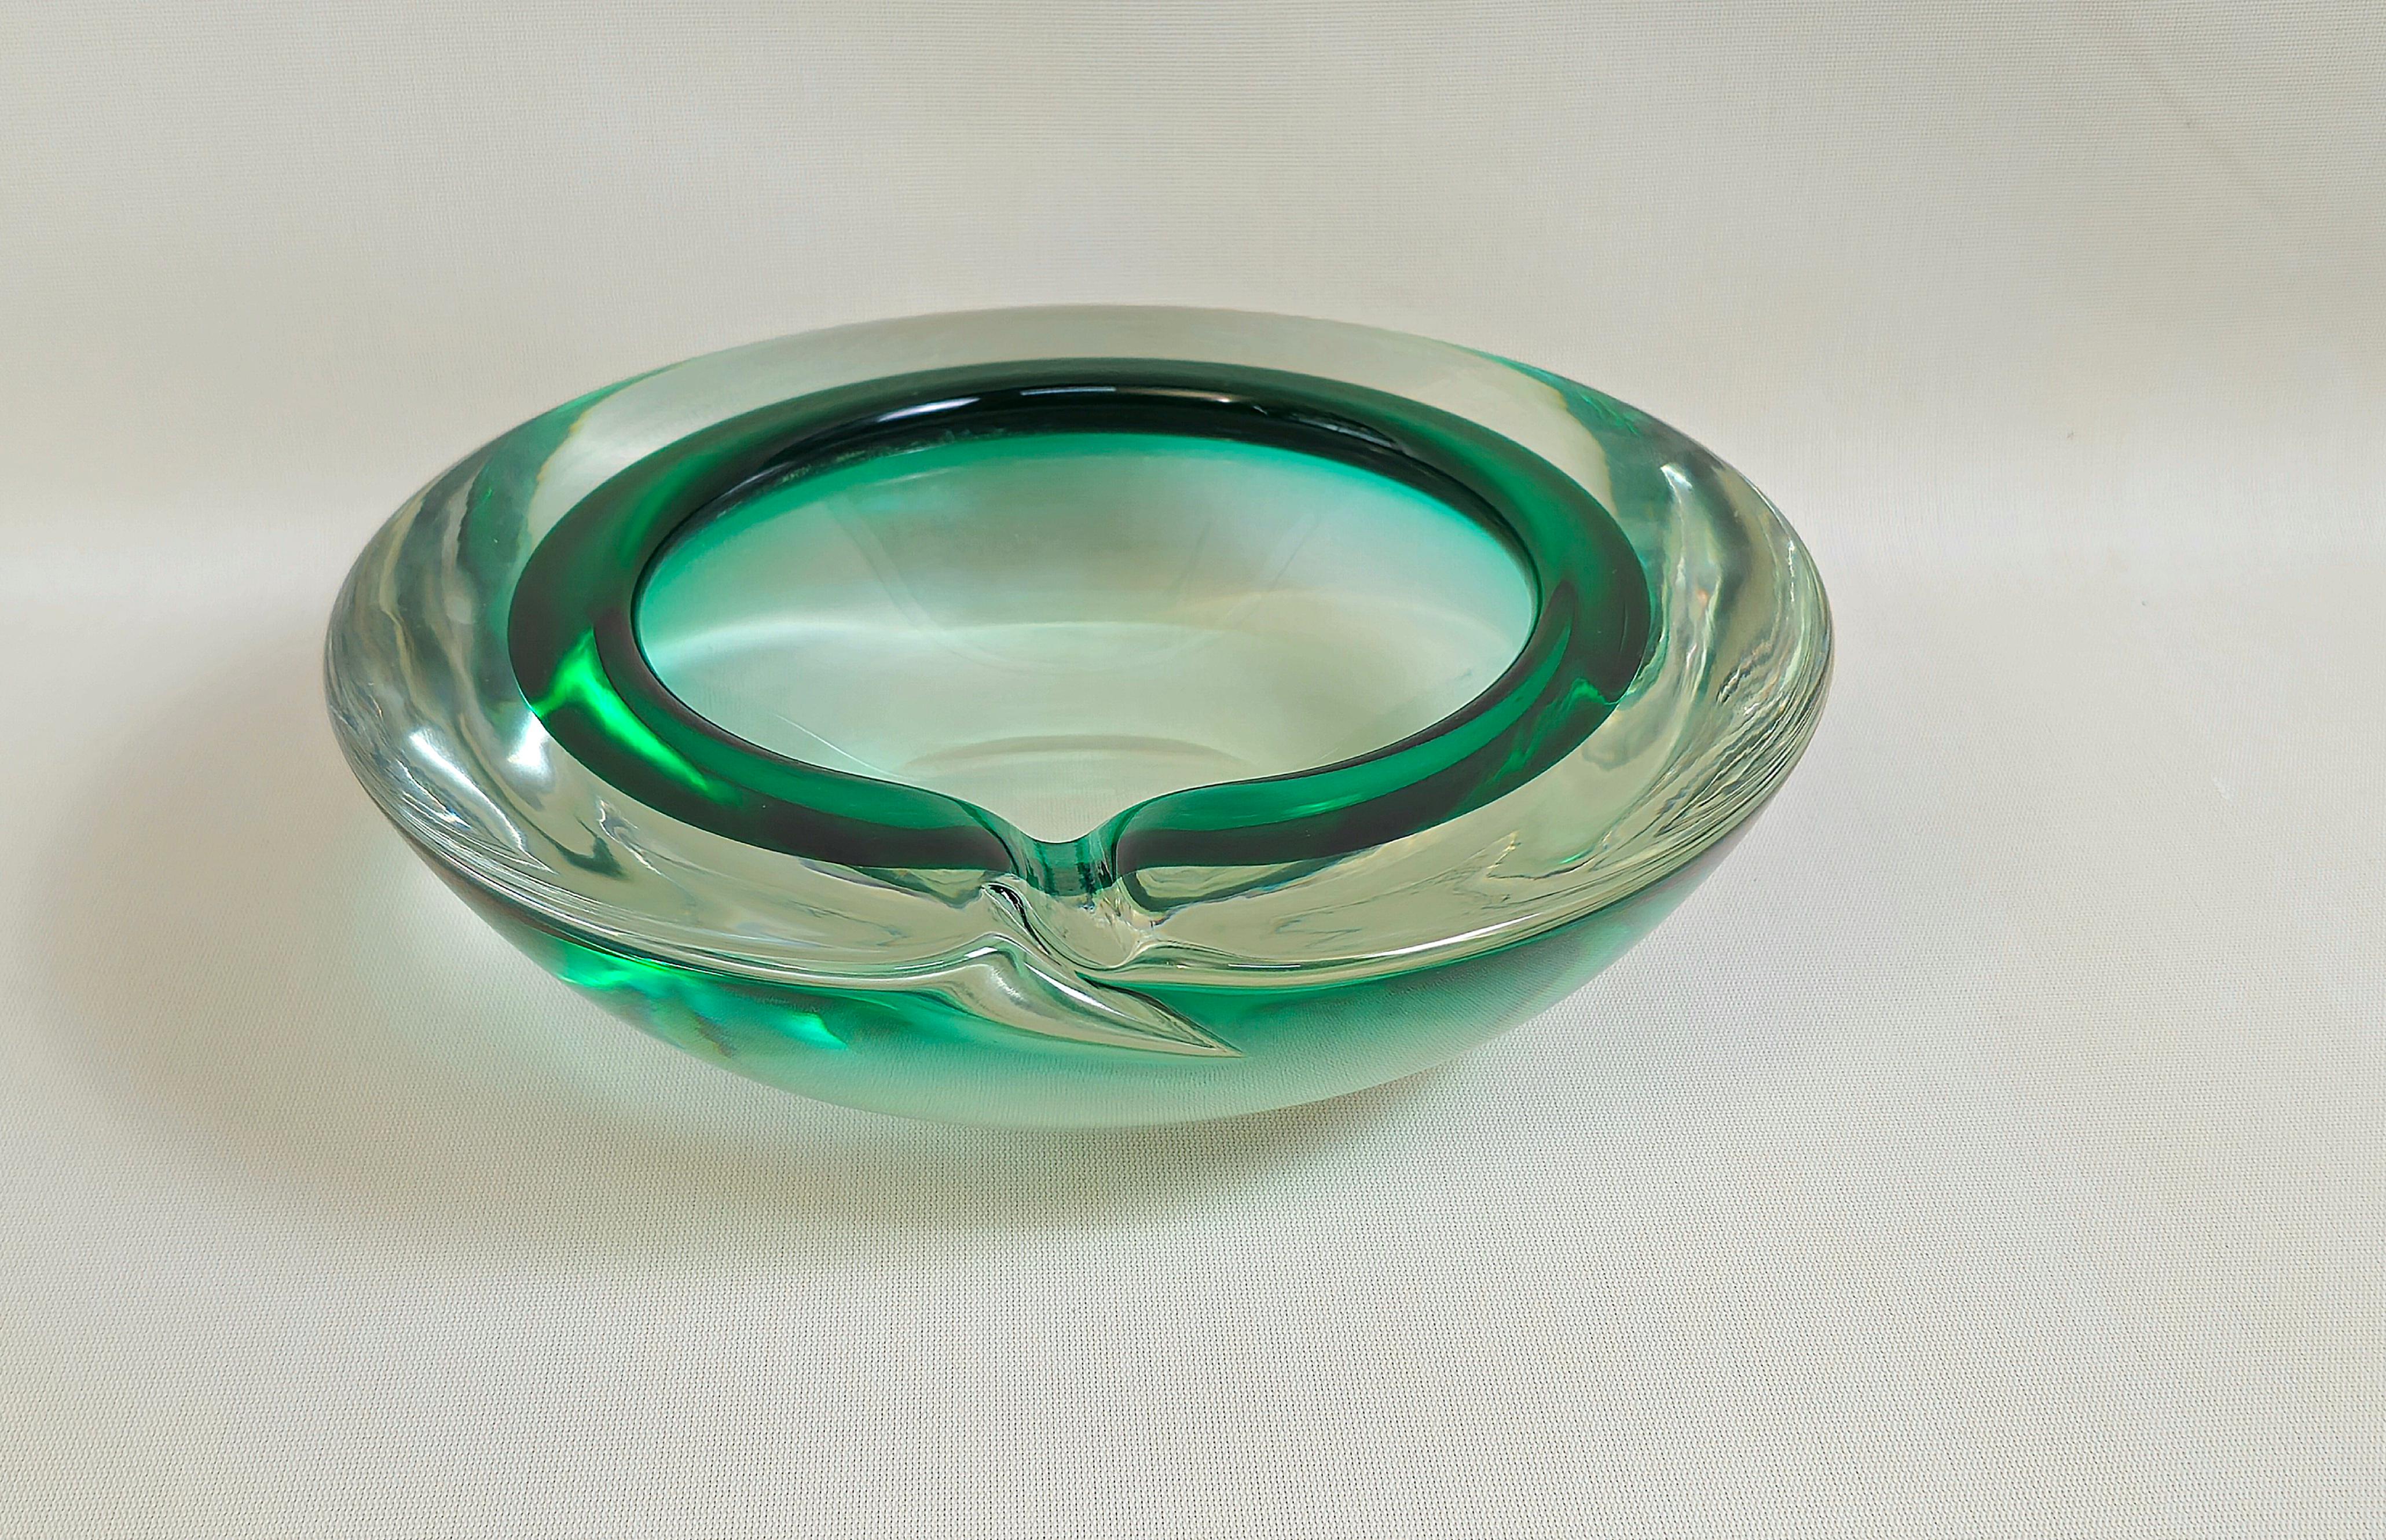 Imposanter kreisförmiger Aschenbecher aus sehr dickem Murano-Glas, in waldgrünen und transparenten Farbtönen. Ich hebe die hervorragende Qualität und Verarbeitung des Glases hervor. Hergestellt in Italien in den 60er Jahren.

Hinweis: Wir bemühen